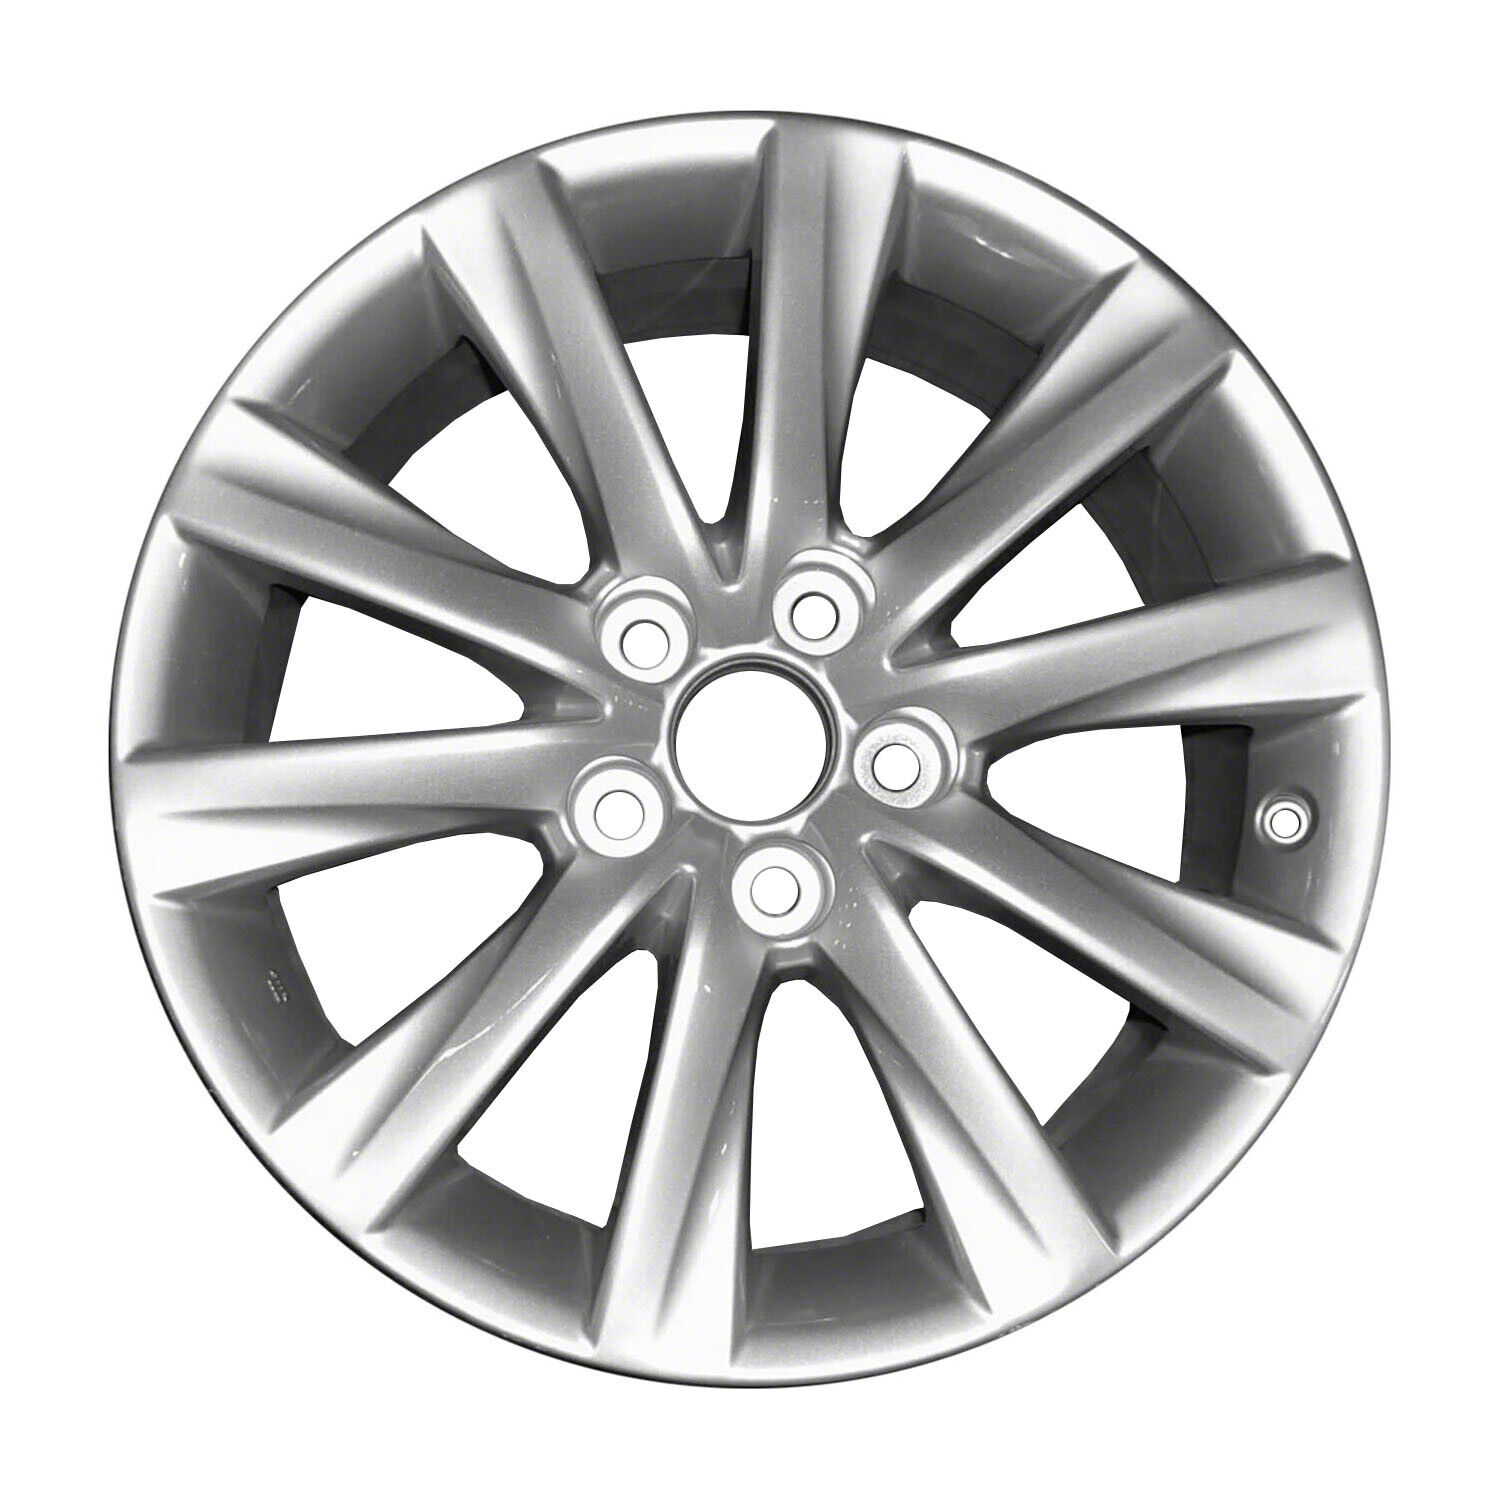 74287 Reconditioned OEM Aluminum Wheel 17x7.5 fits 2014-2015 Lexus IS250 Sedan